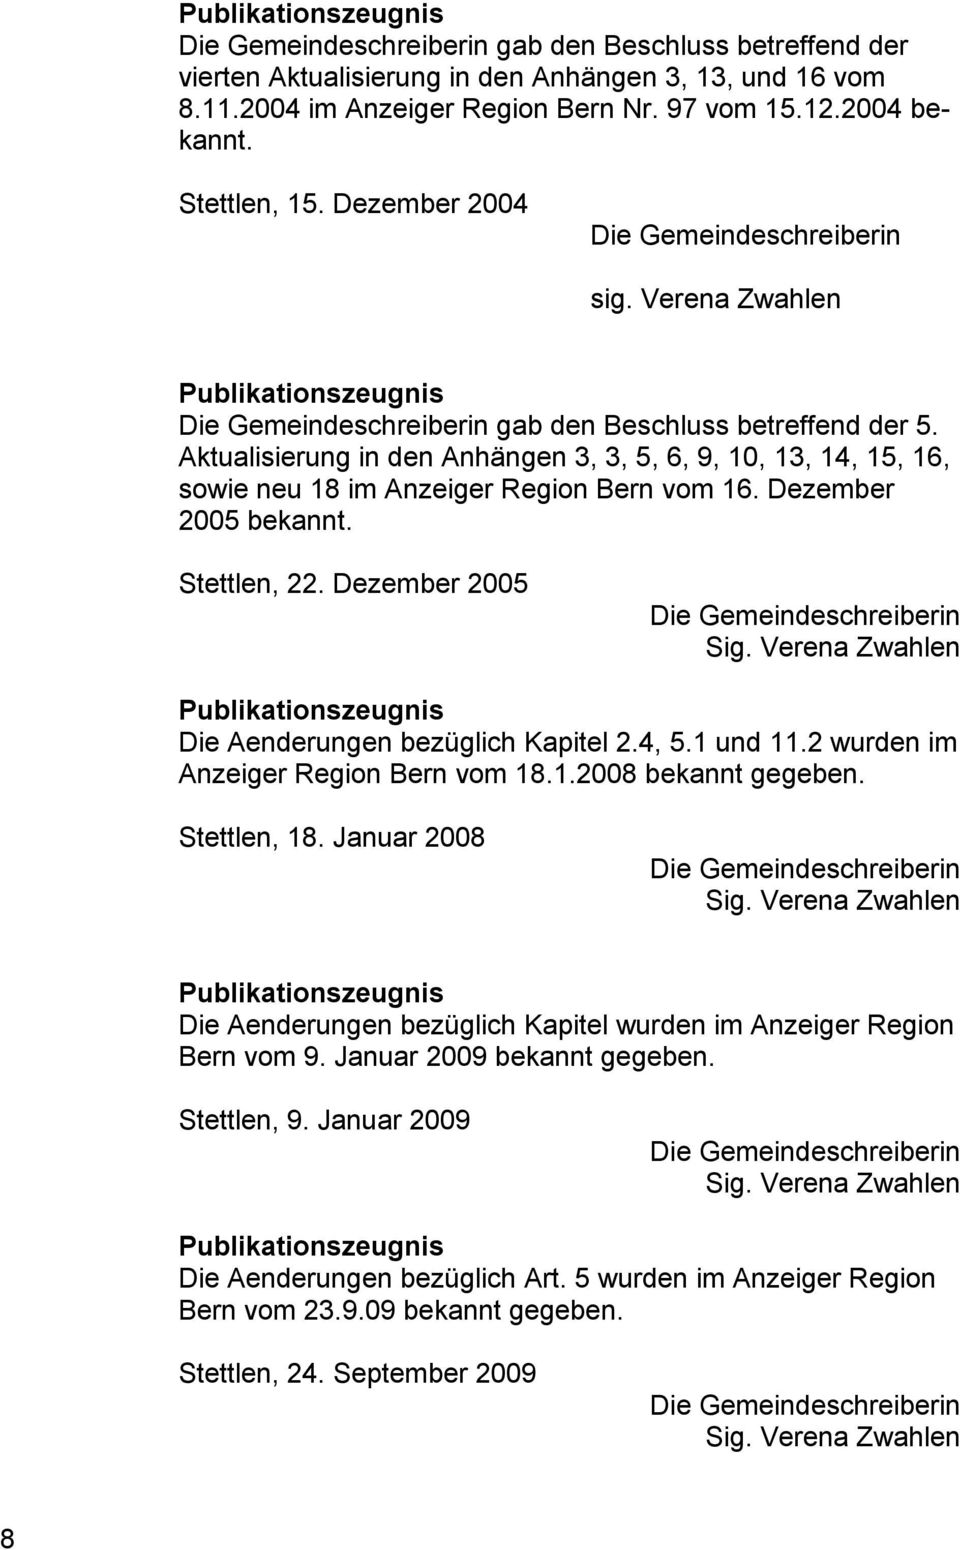 Aktualisierung in den Anhängen 3, 3, 5, 6, 9, 10, 13, 14, 15, 16, sowie neu 18 im Anzeiger Region Bern vom 16. Dezember 2005 bekannt. Stettlen, 22. Dezember 2005 Die Gemeindeschreiberin Sig.